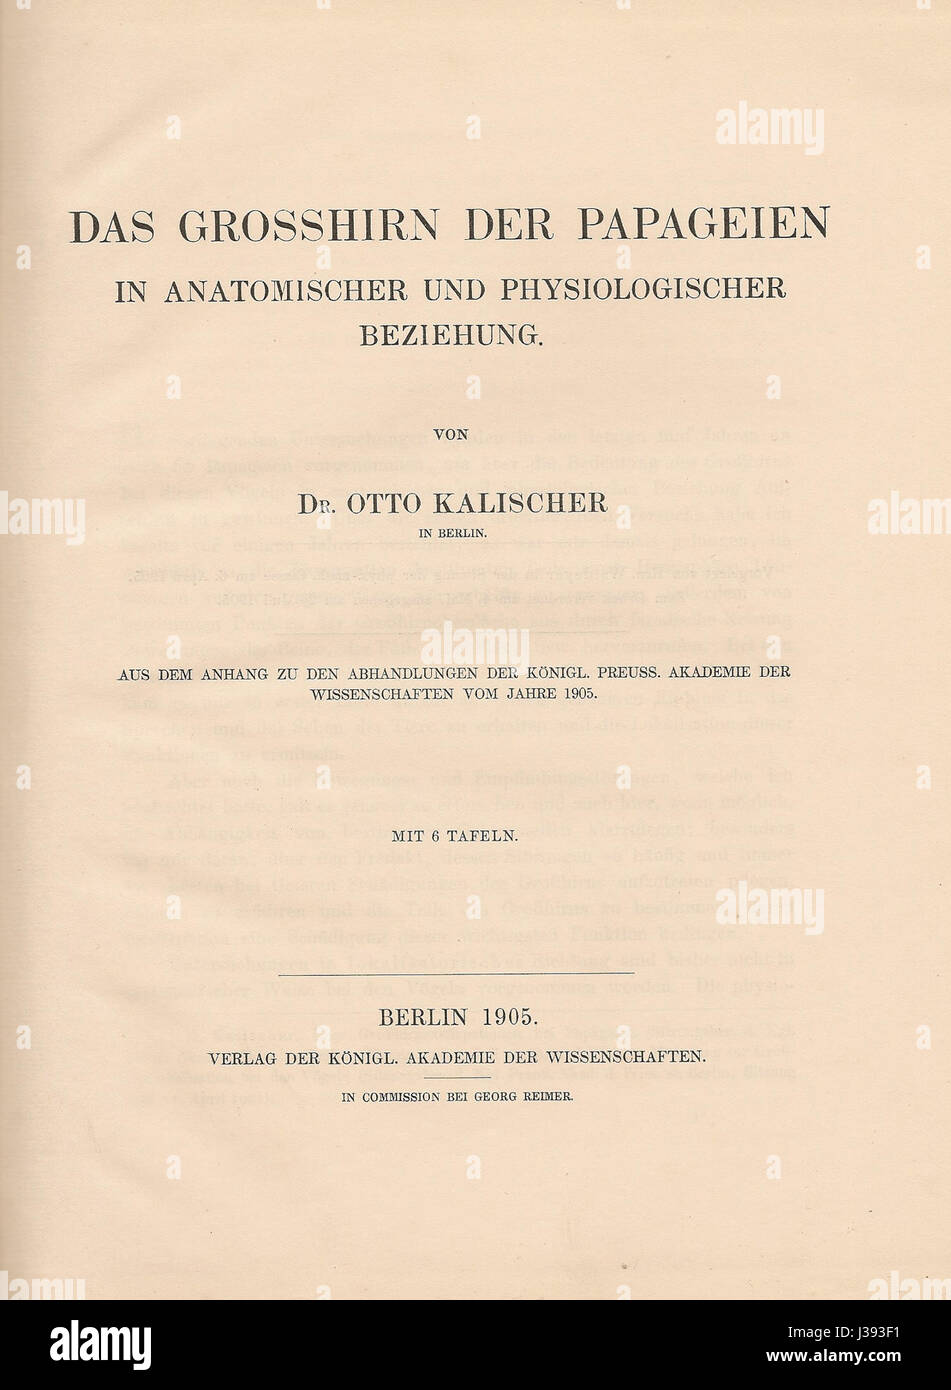 Das Grosshirn anatomischer und der Papageien dans physiologischer Beziehung (1905) Banque D'Images